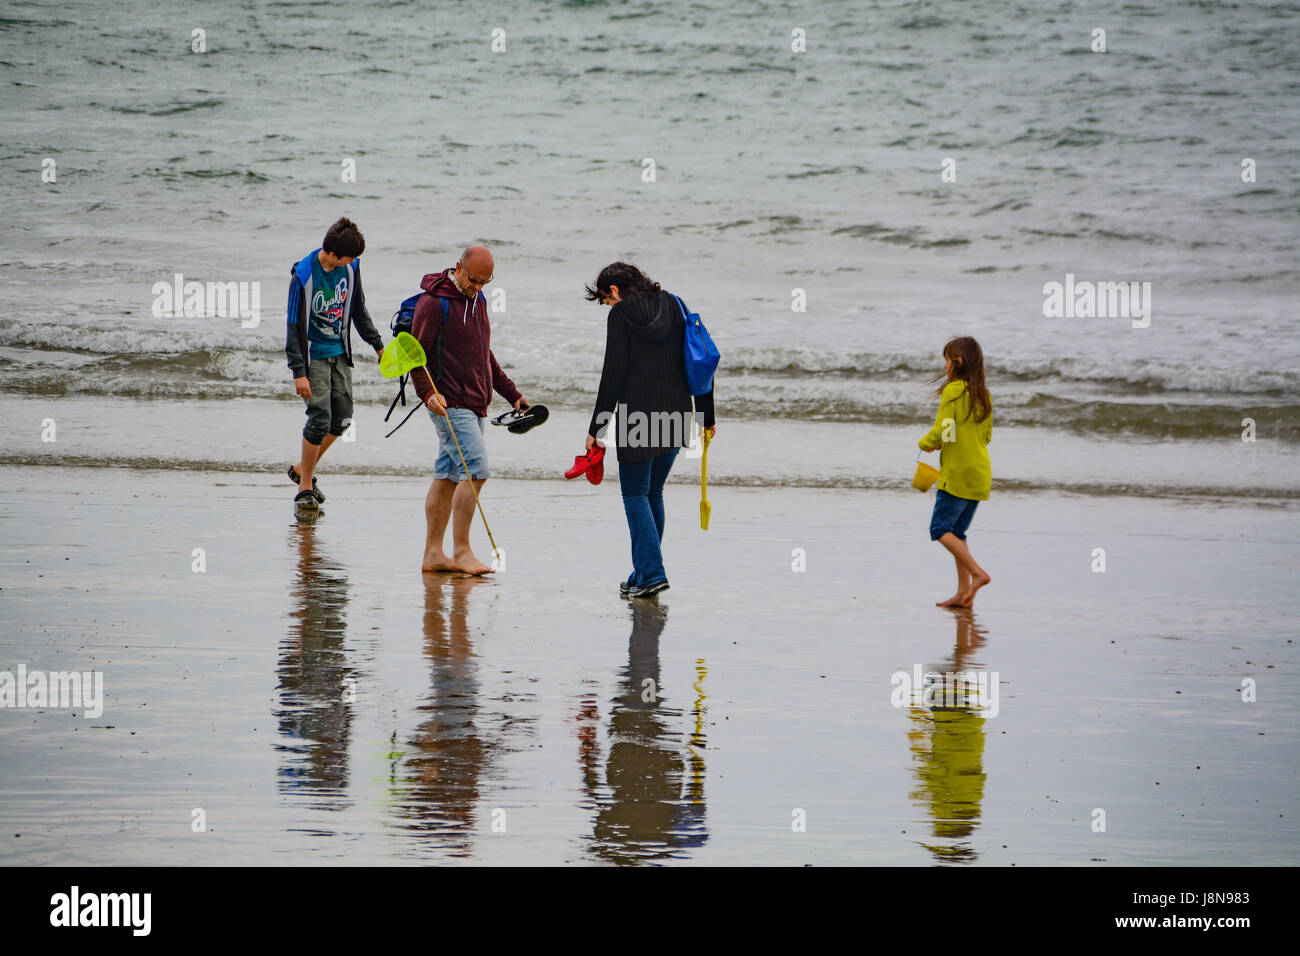 Longrock, près de Marazion, Cornwall, UK. 30 mai 2017. Météo britannique. La plage à Longrock était calme au début de la semaine de vacances de la banque, avec une poignée de gens de la planche à voile, marche à pied leurs chiens, en tenant un jogging ou simplement pottering autour sur la plage. Il a été doux, avec une température de 19 degrés C. Crédit : cwallpix/Alamy Live News Banque D'Images